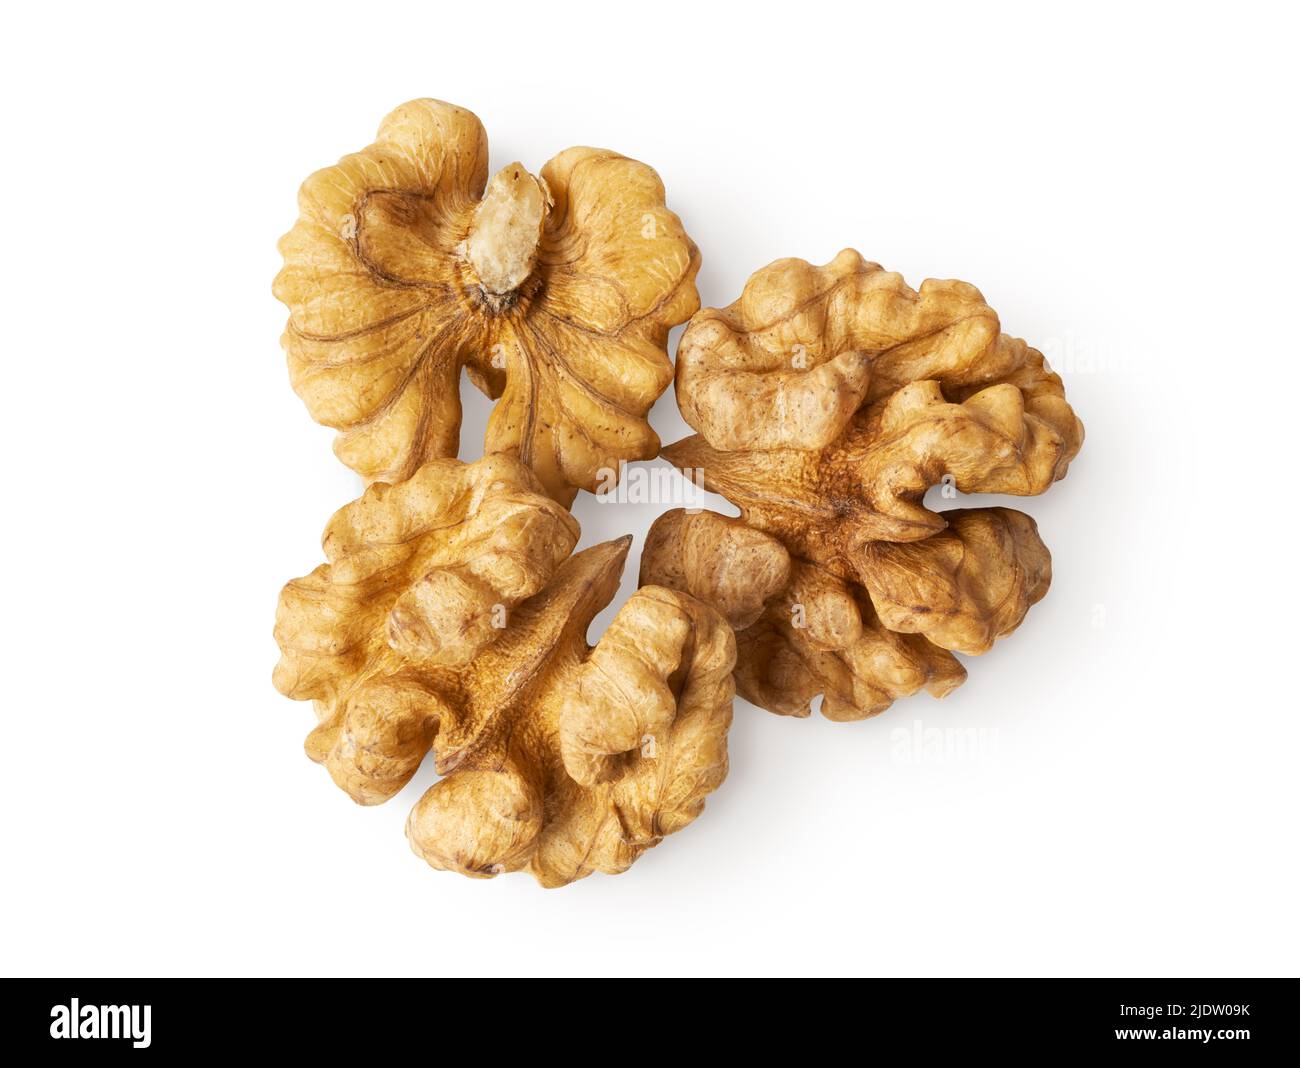 Group of fresh peeled walnuts, isolated on white background Stock Photo